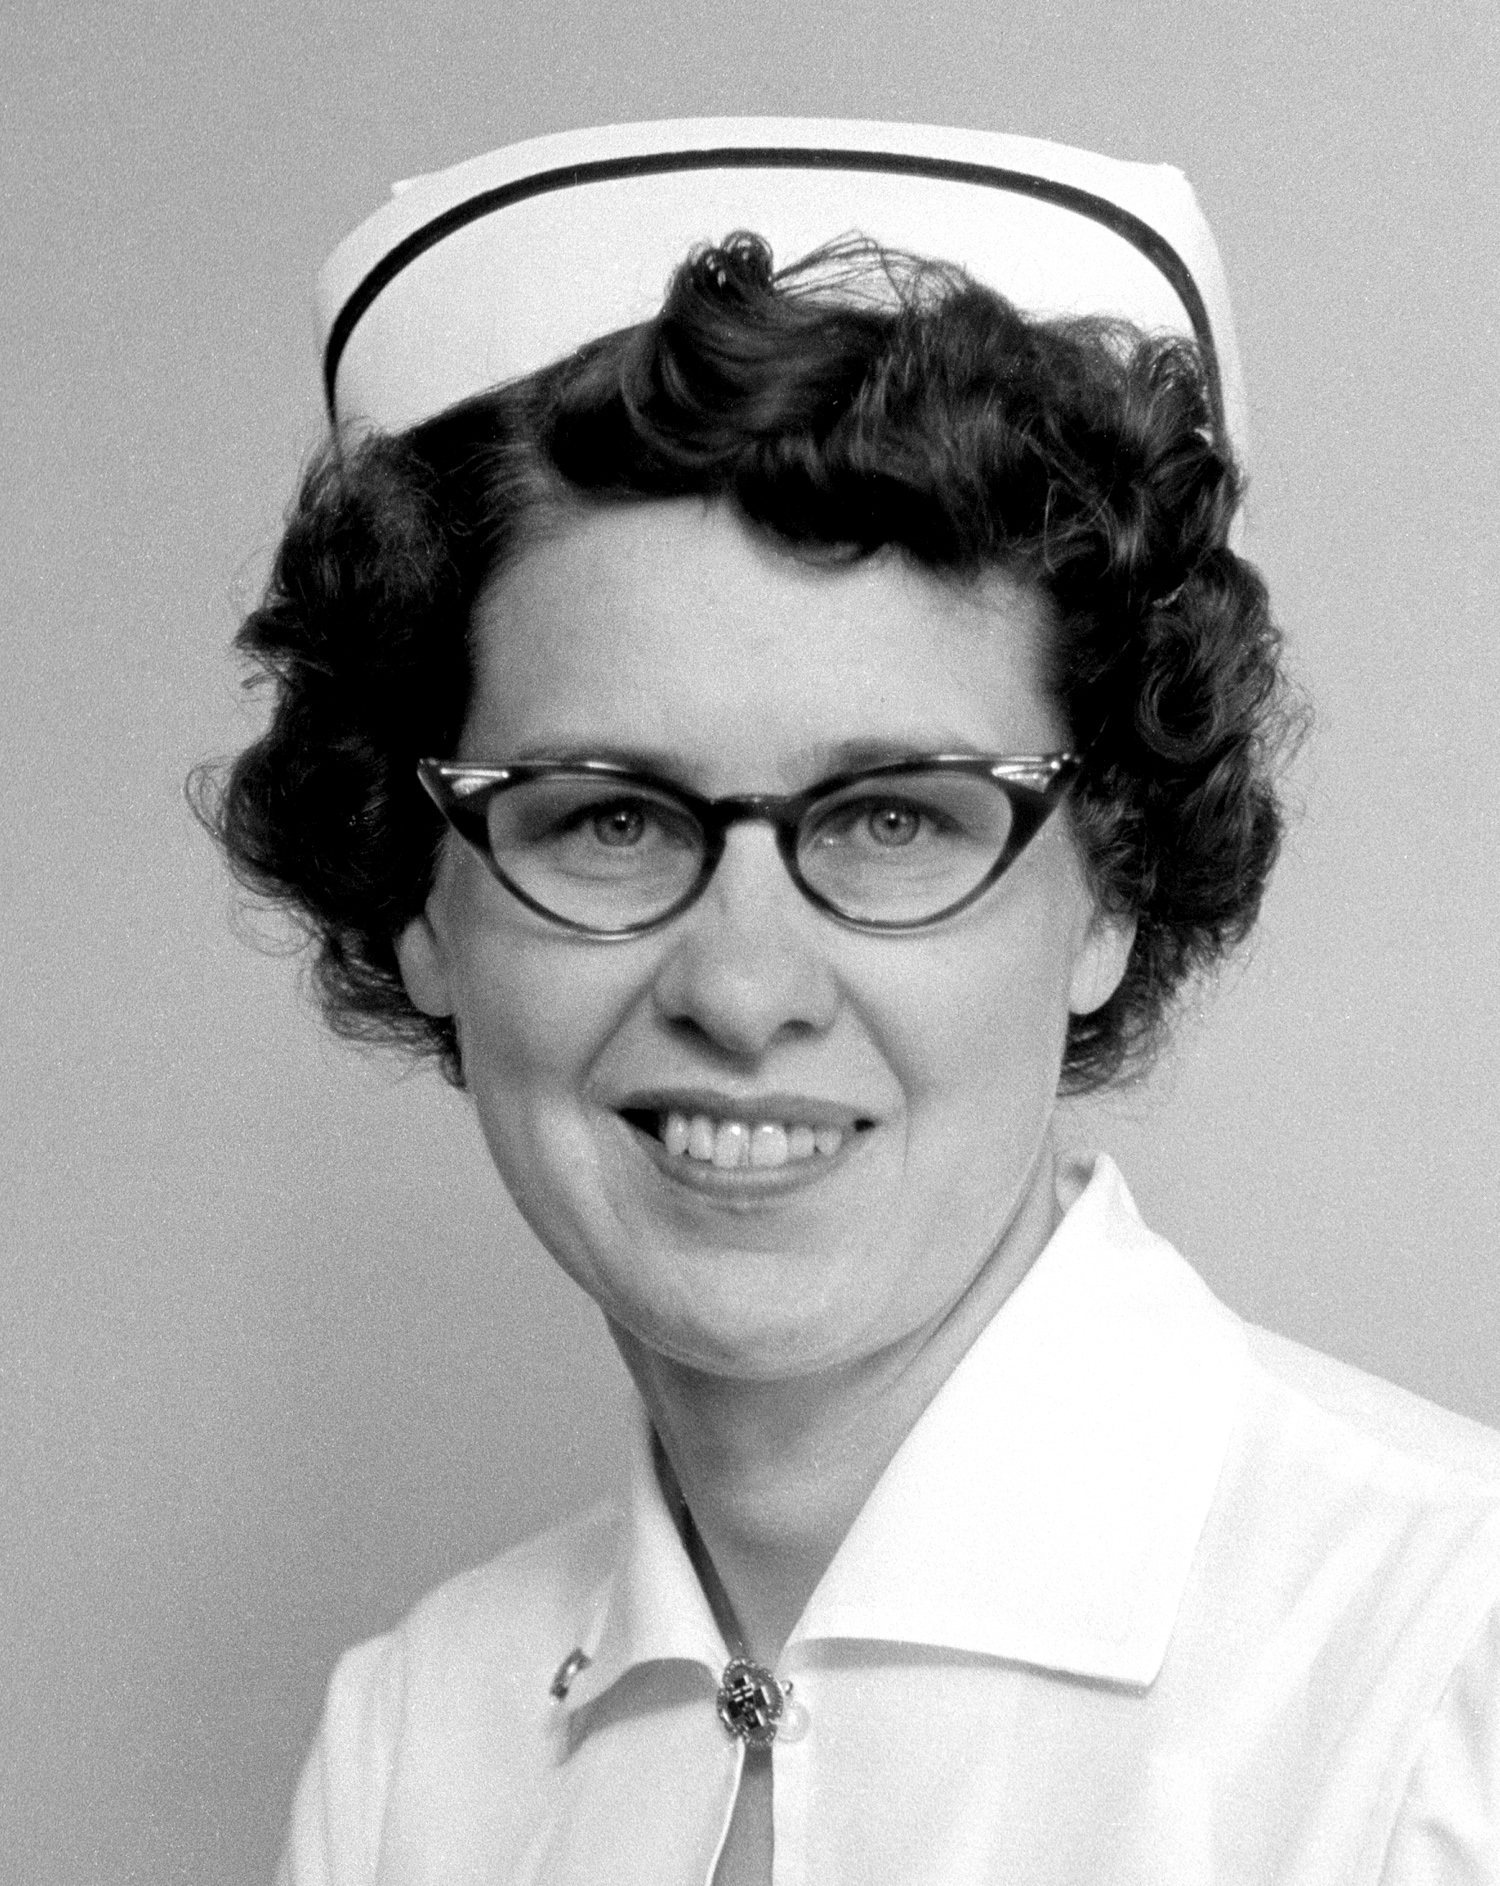 Eleanor Boyes began her 27-year missionary nursing career in August 1959.